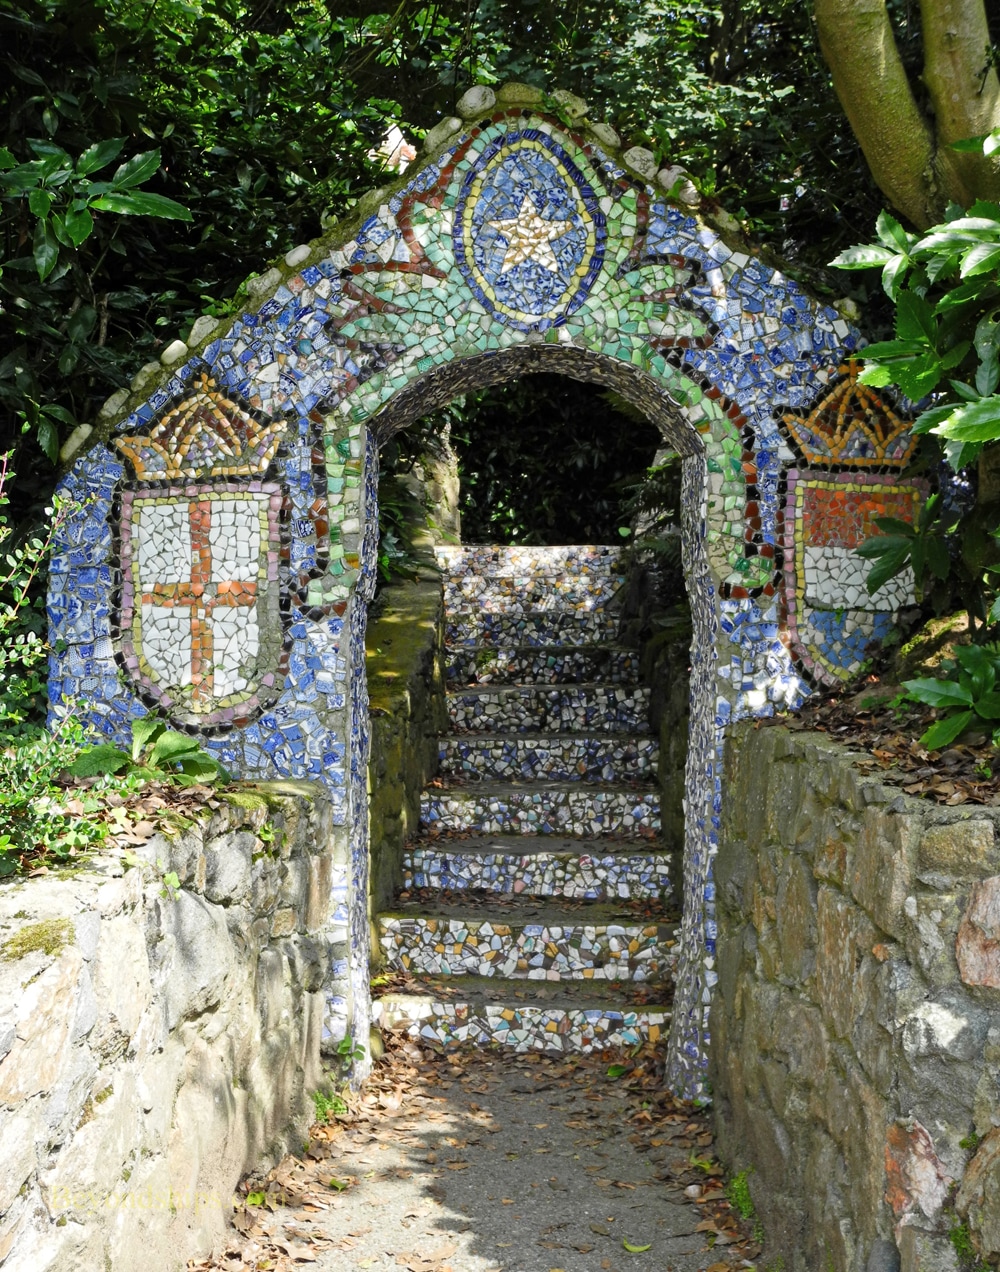 The Little Chapel, Guernsey